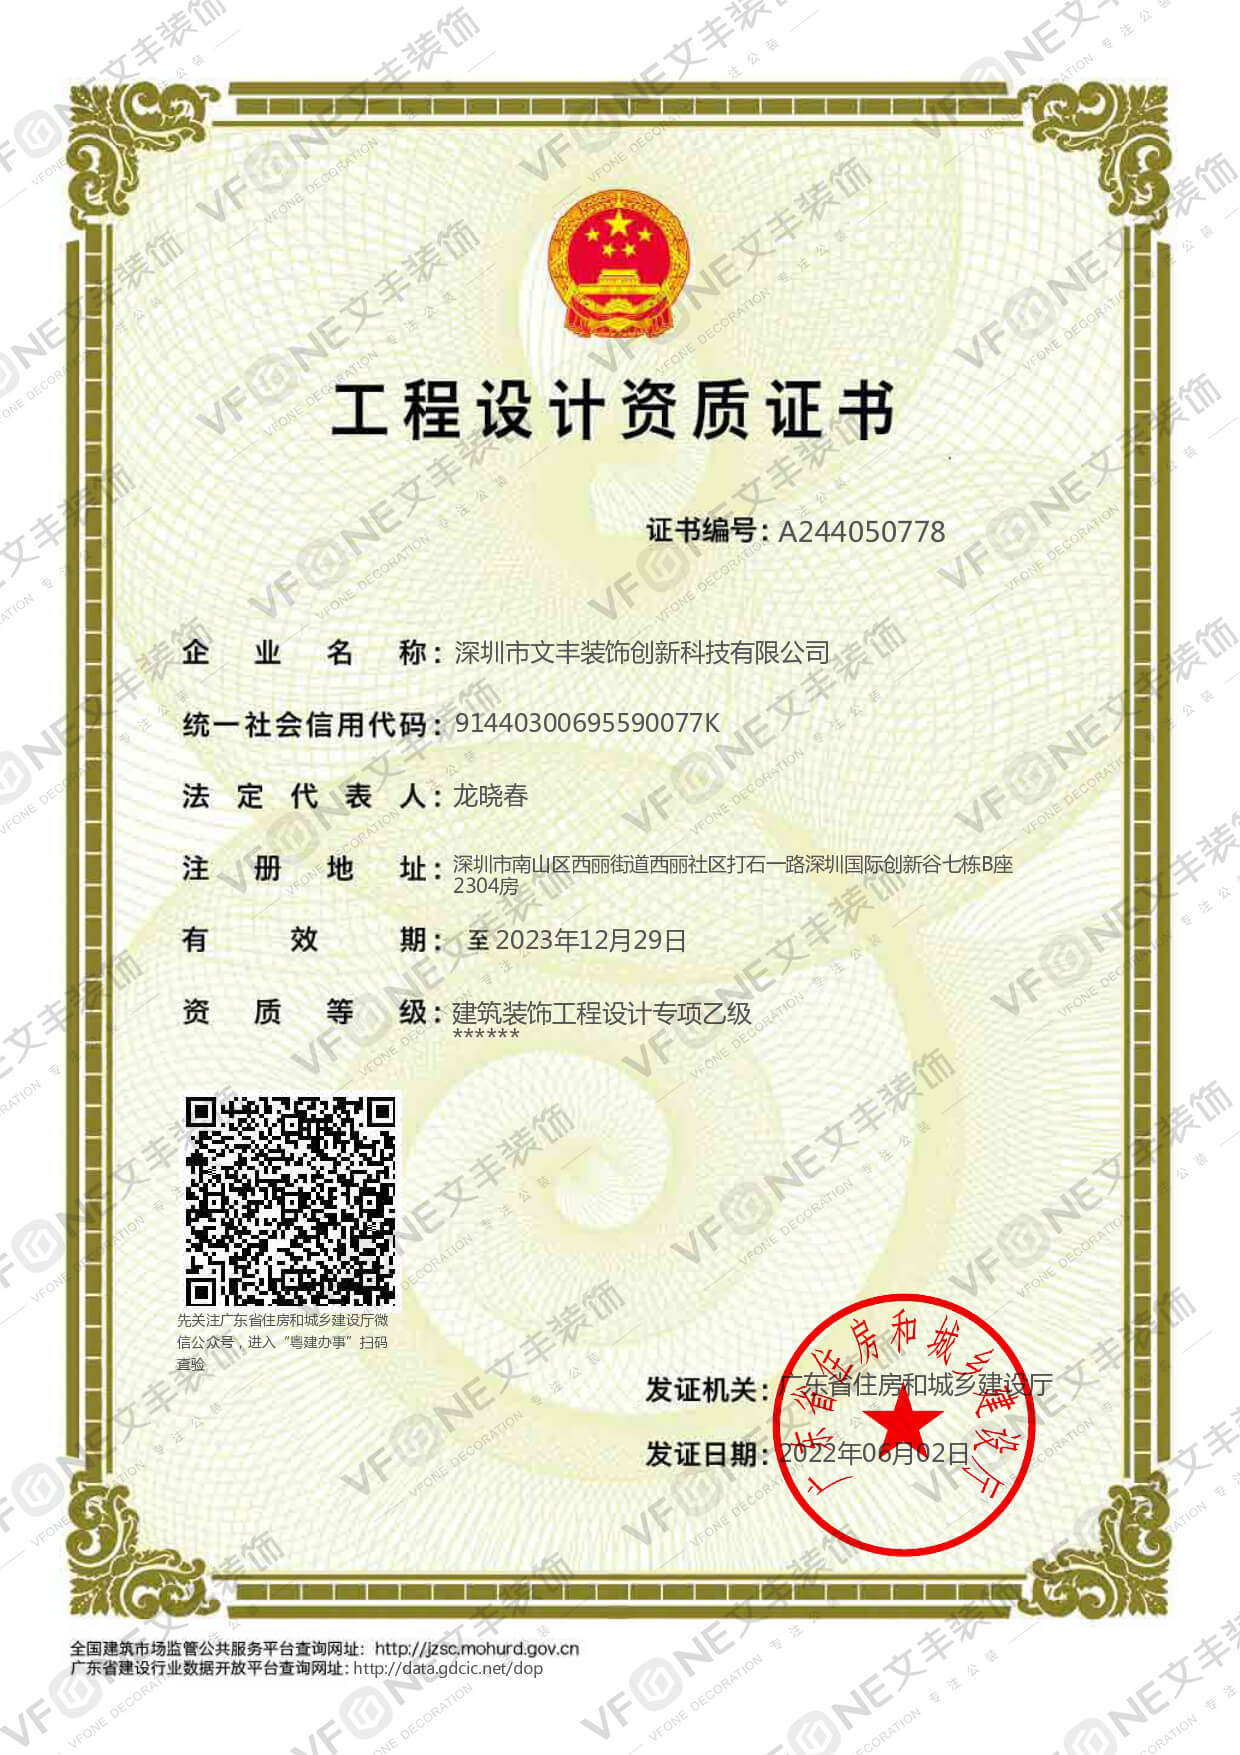 深圳装修公司_工程设计资质证书-文丰装饰公司